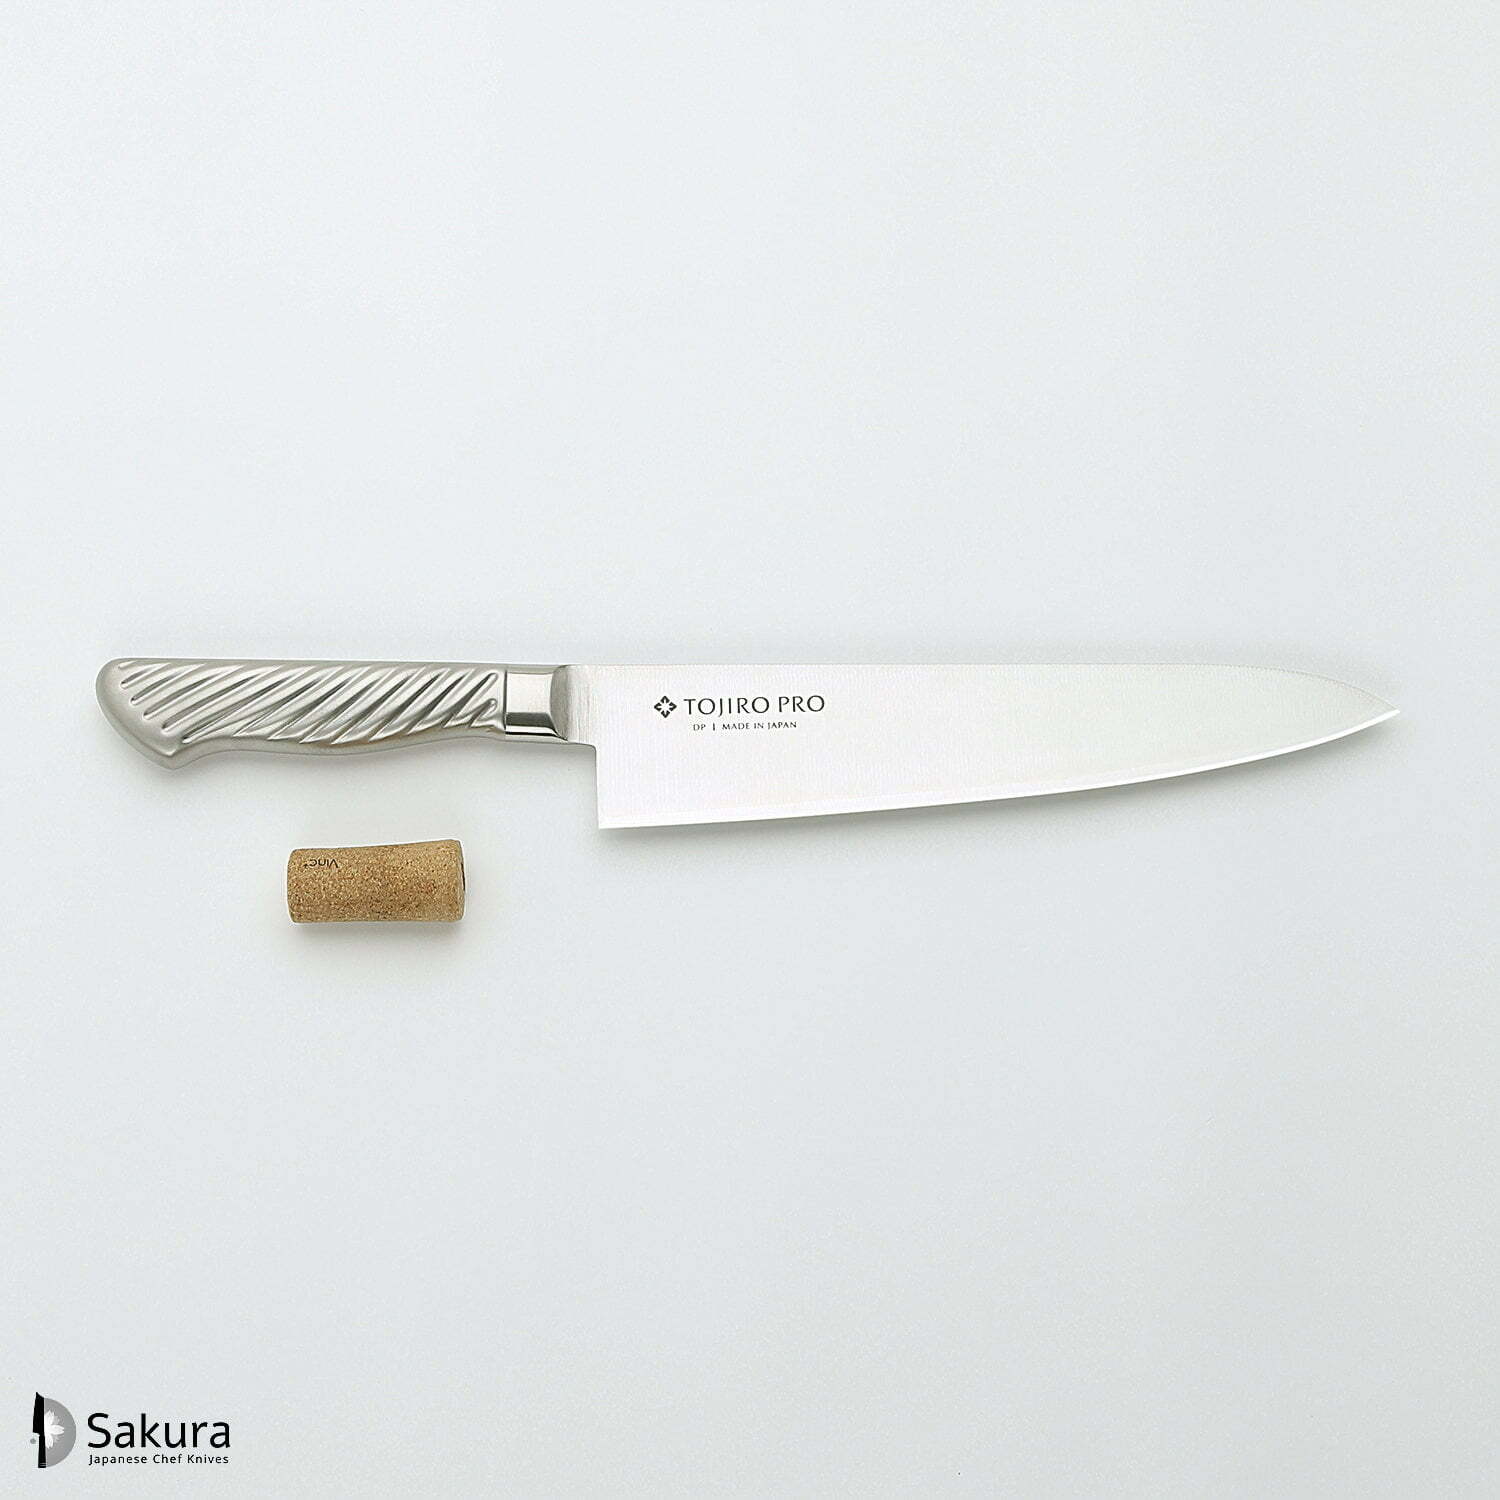 סכין שף רב-תכליתית גִּיוּטוֹ 210מ״מ מחוזקת 3 שכבות: פלדת פחמן יפנית VG-10 עטופה פלדת אל-חלד גימור מט מלוטש טוג׳ירו יפן